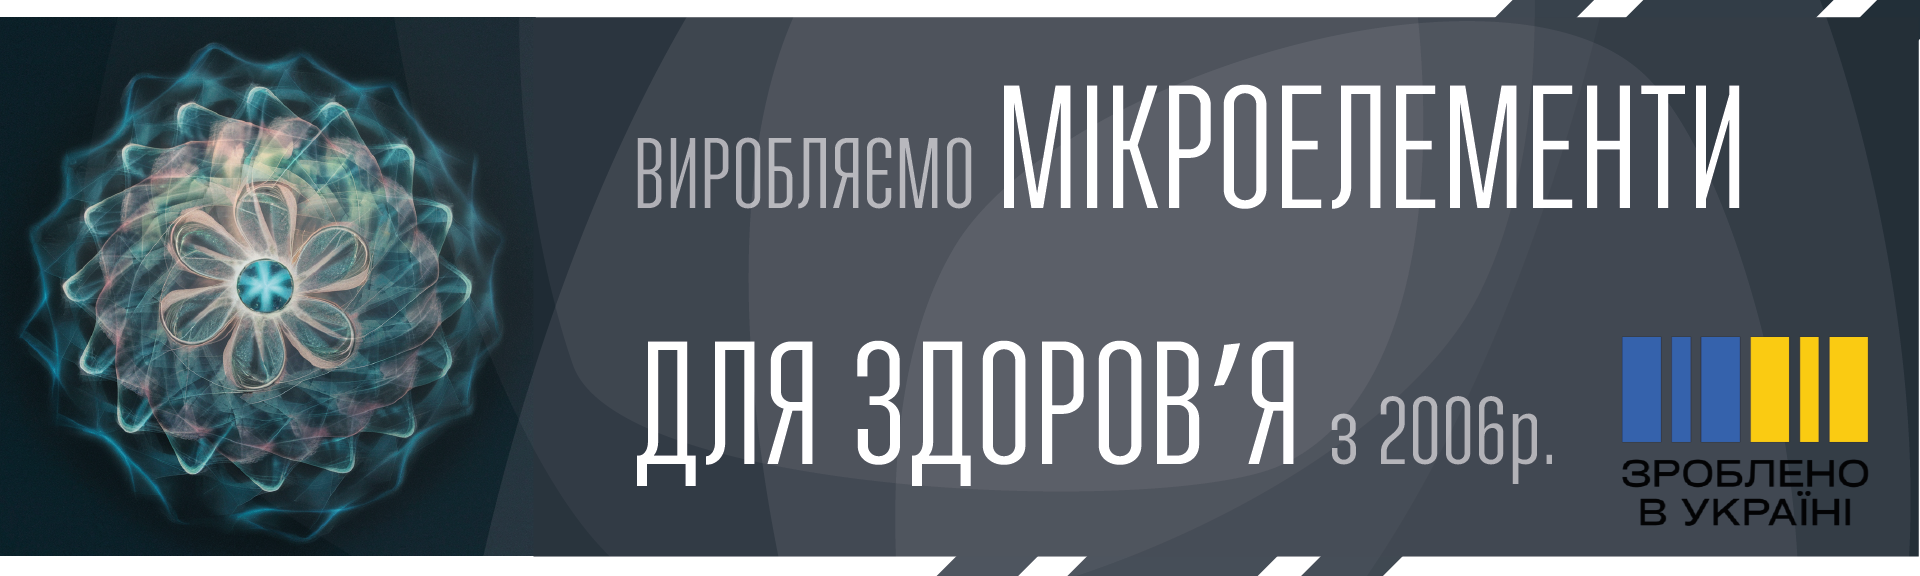 Український виробник мікроелементів (мікронутрієнтів) з 2006 року